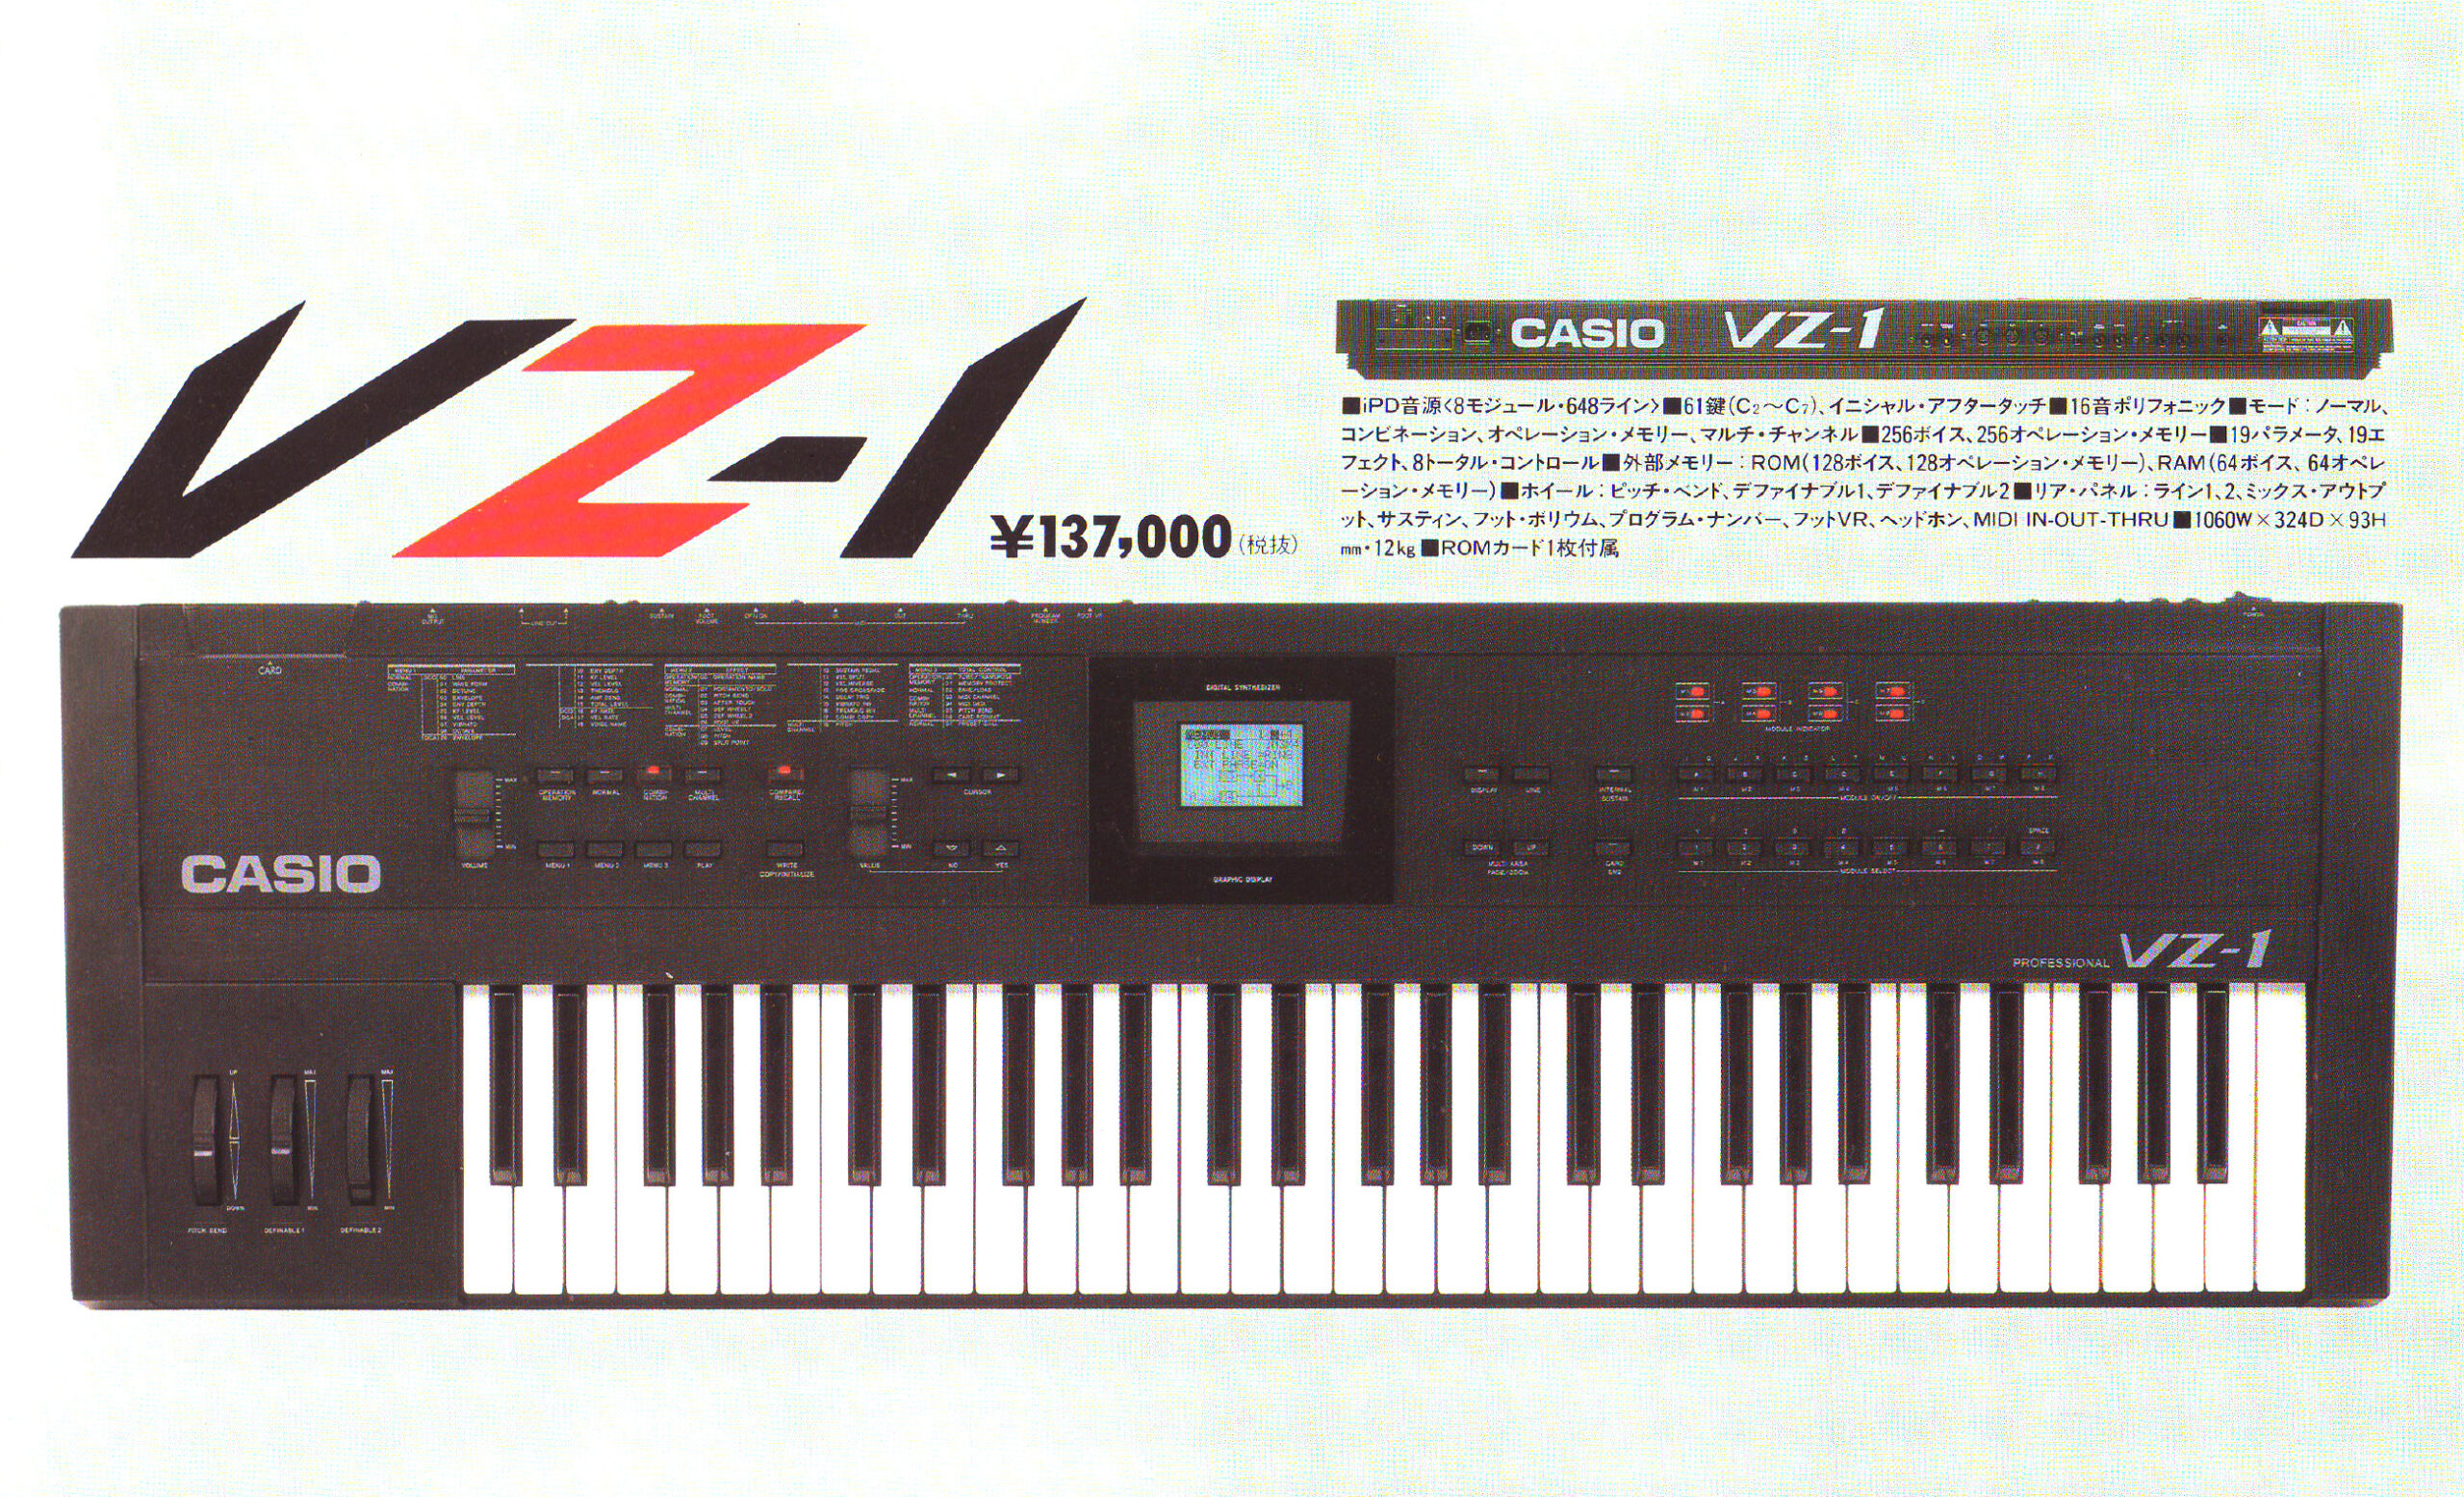 1980年代デジタルシンセの黄金期、VZ-1シリーズに搭載されたiPD音源 